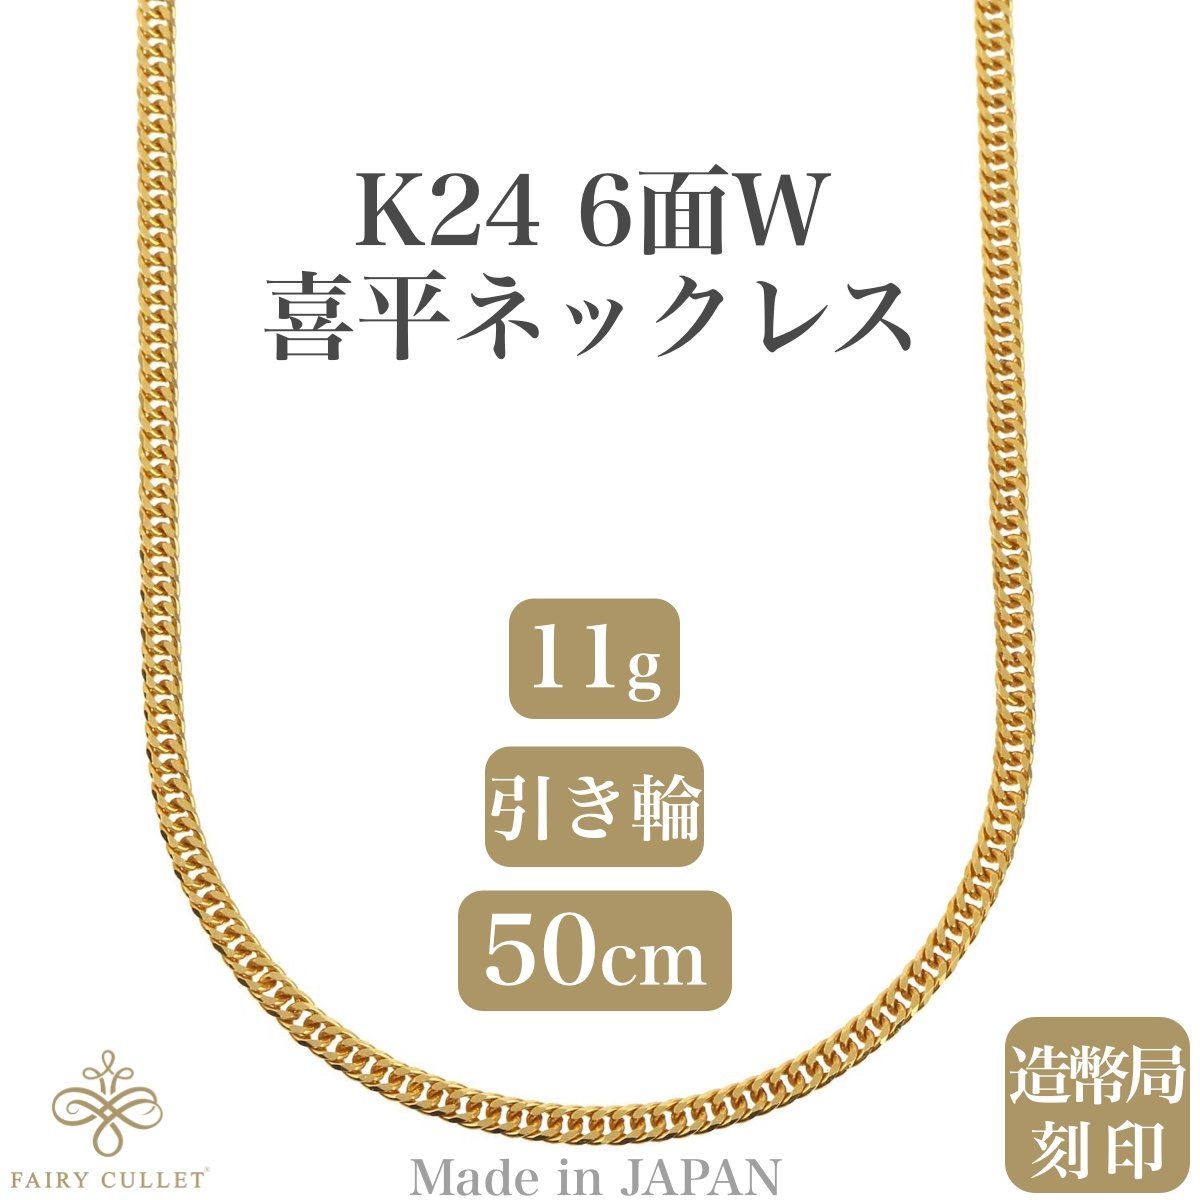 24金ネックレス K24 6面W喜平チェーン 日本製 純金 検定印 約11g 50cm 